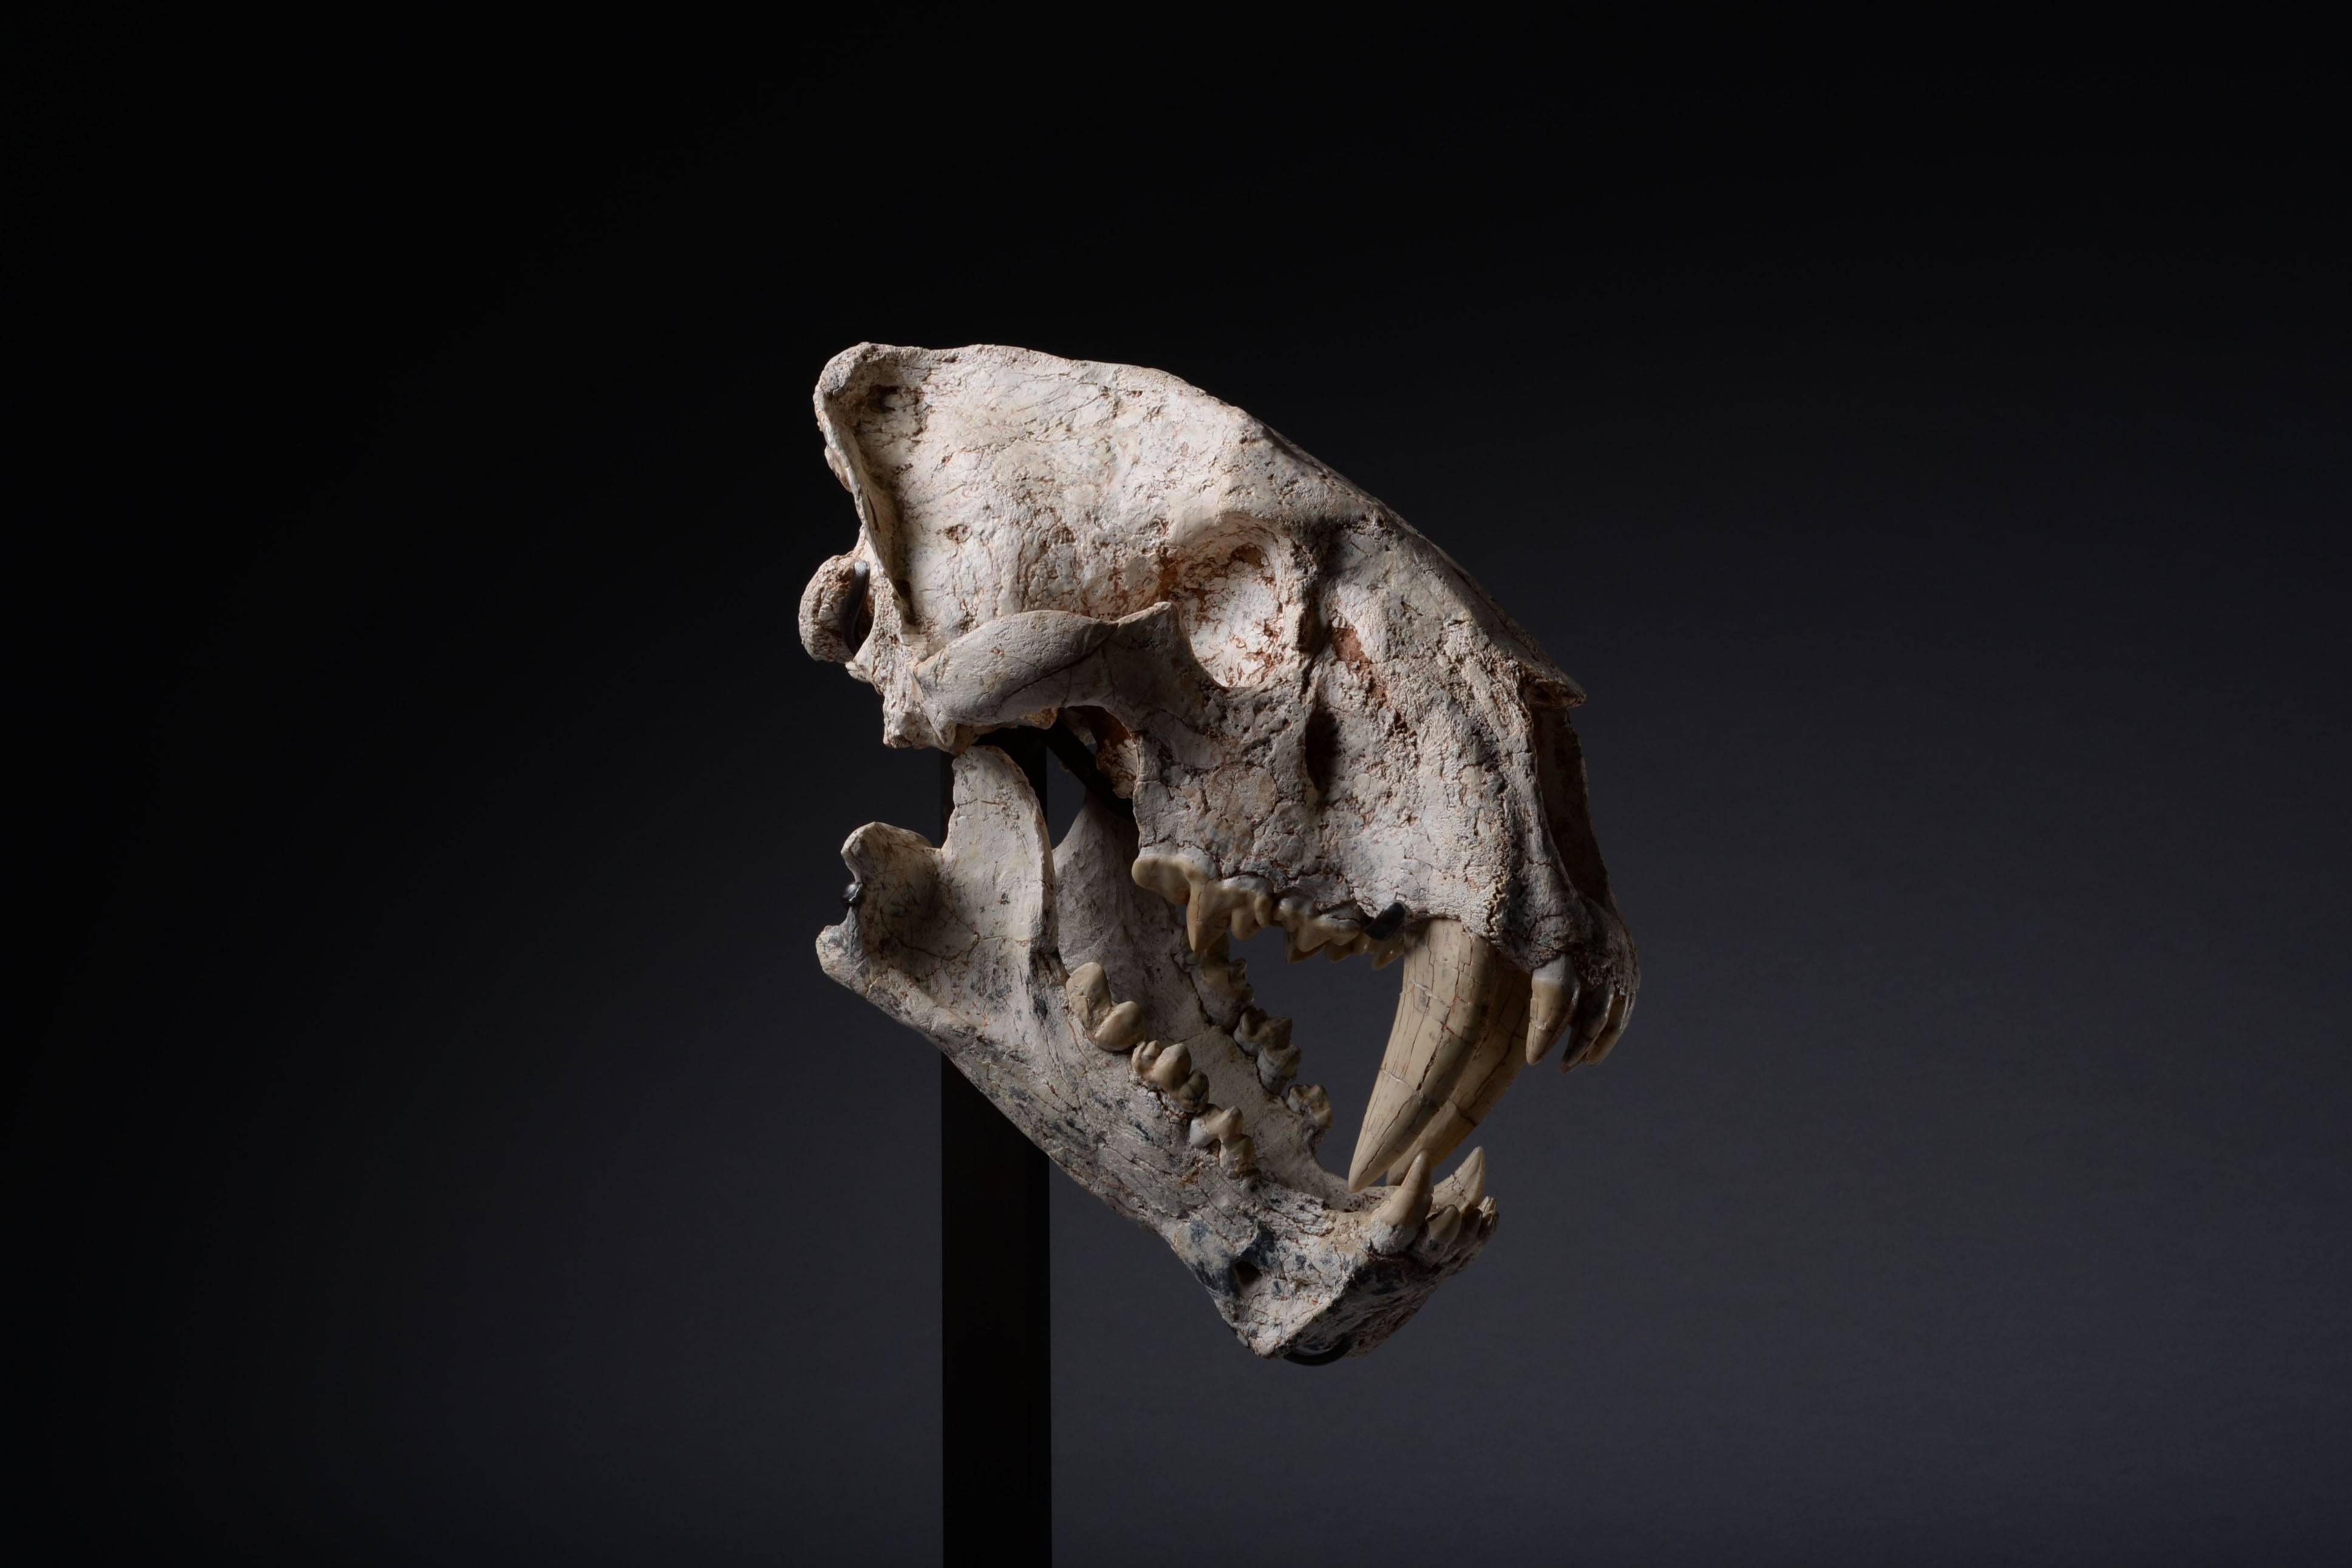 Un crâne fossilisé rare d'un des prédateurs préhistoriques les plus emblématiques. Un crâne de chat à dents de sabre du plus grand genre connu:: Machairodus giganteus:: datant du Miocène supérieur:: il y a environ 10 à 5 millions d'années. 
 
De la